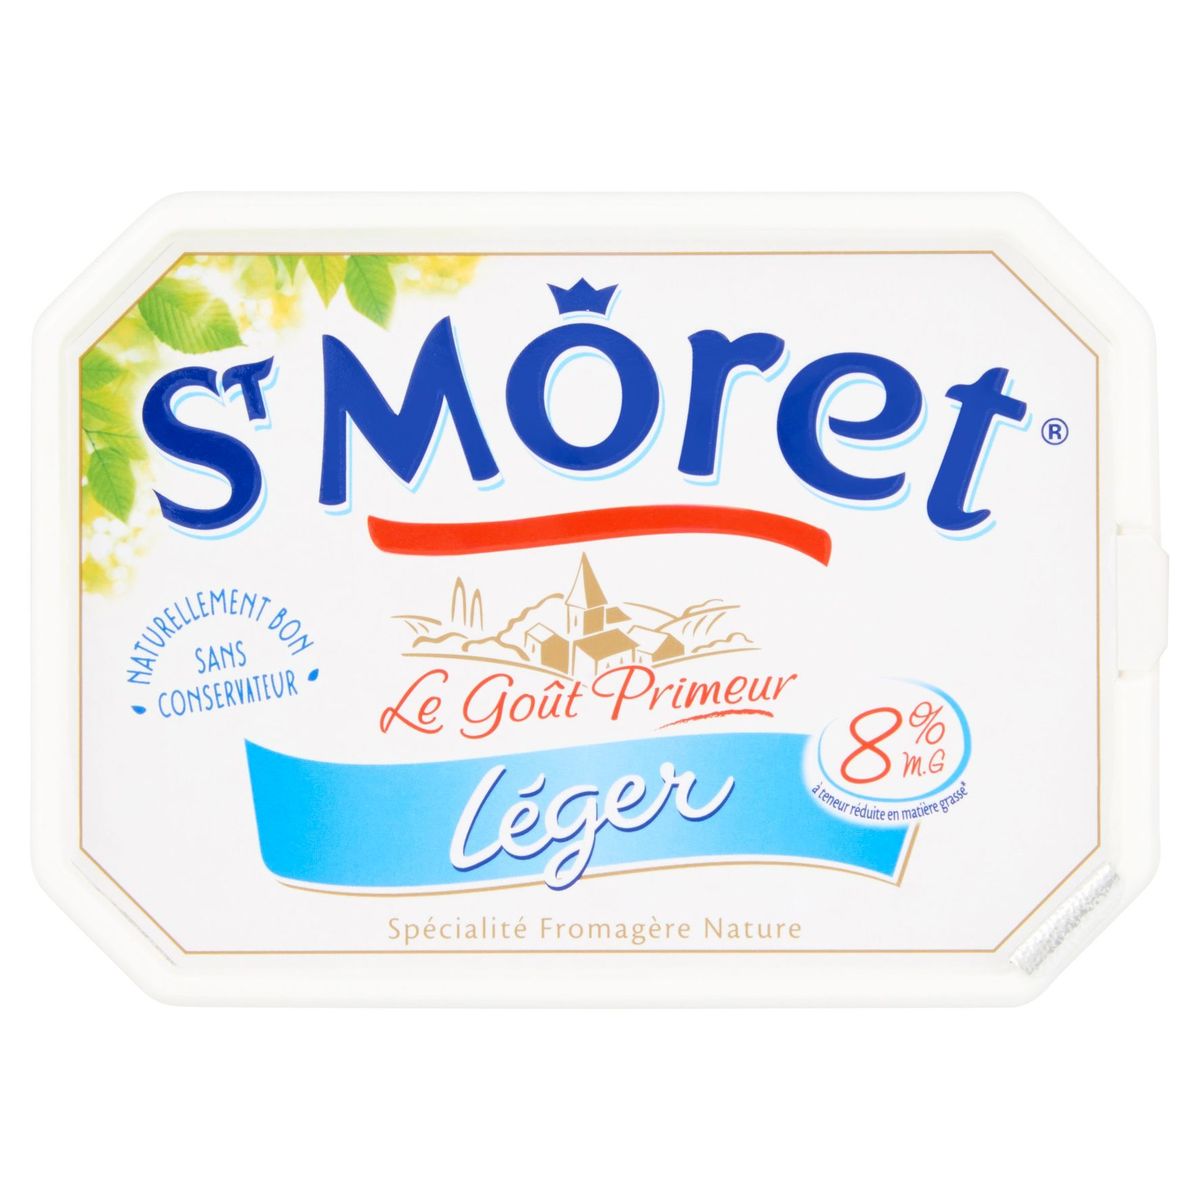 St Môret Léger 8% V.G. 150 g